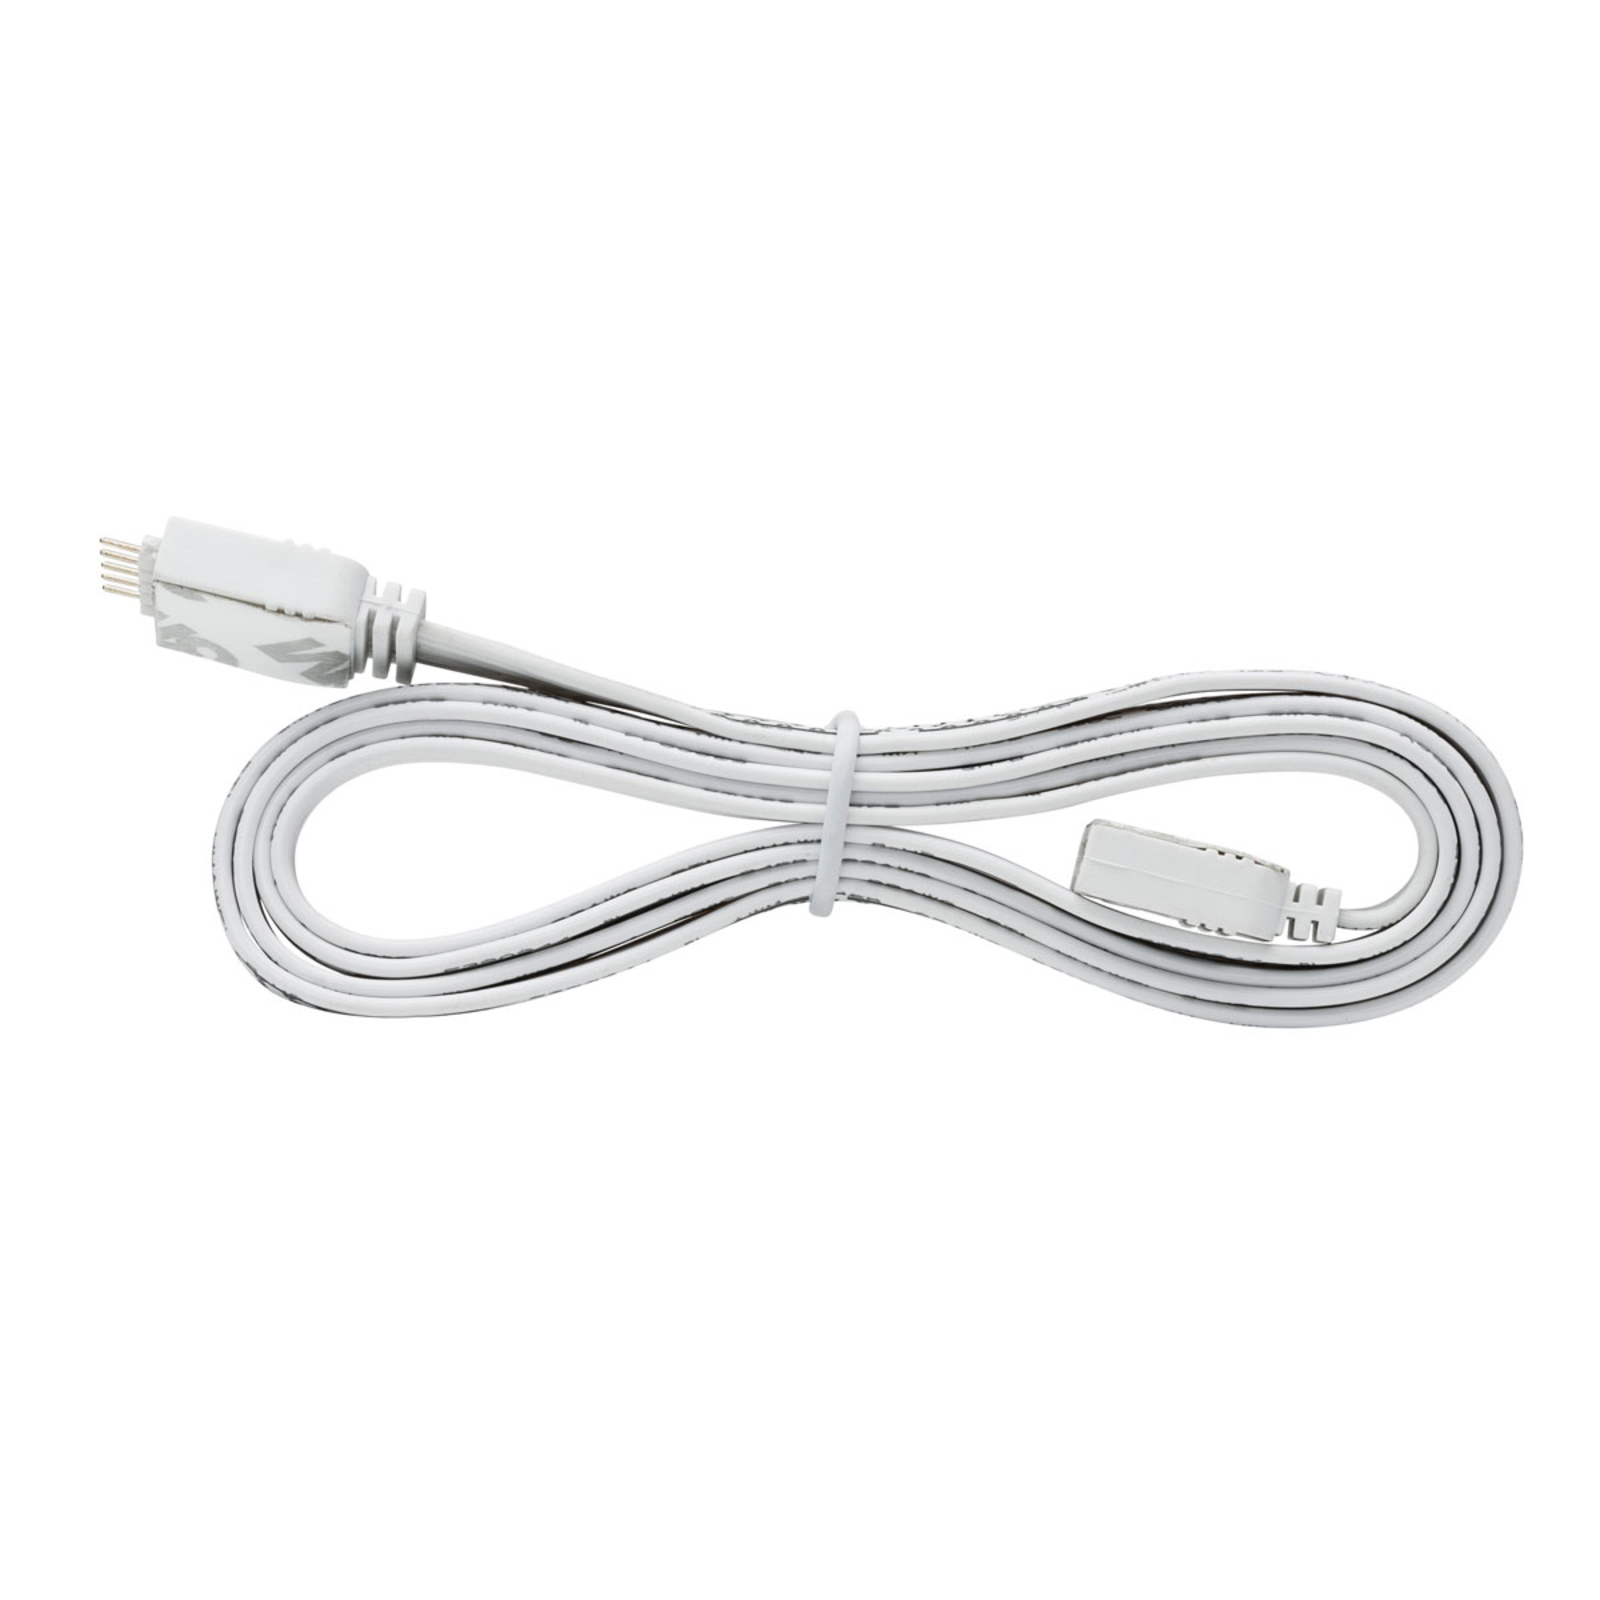 Paulmann MaxLED 1m flex connection cable, white